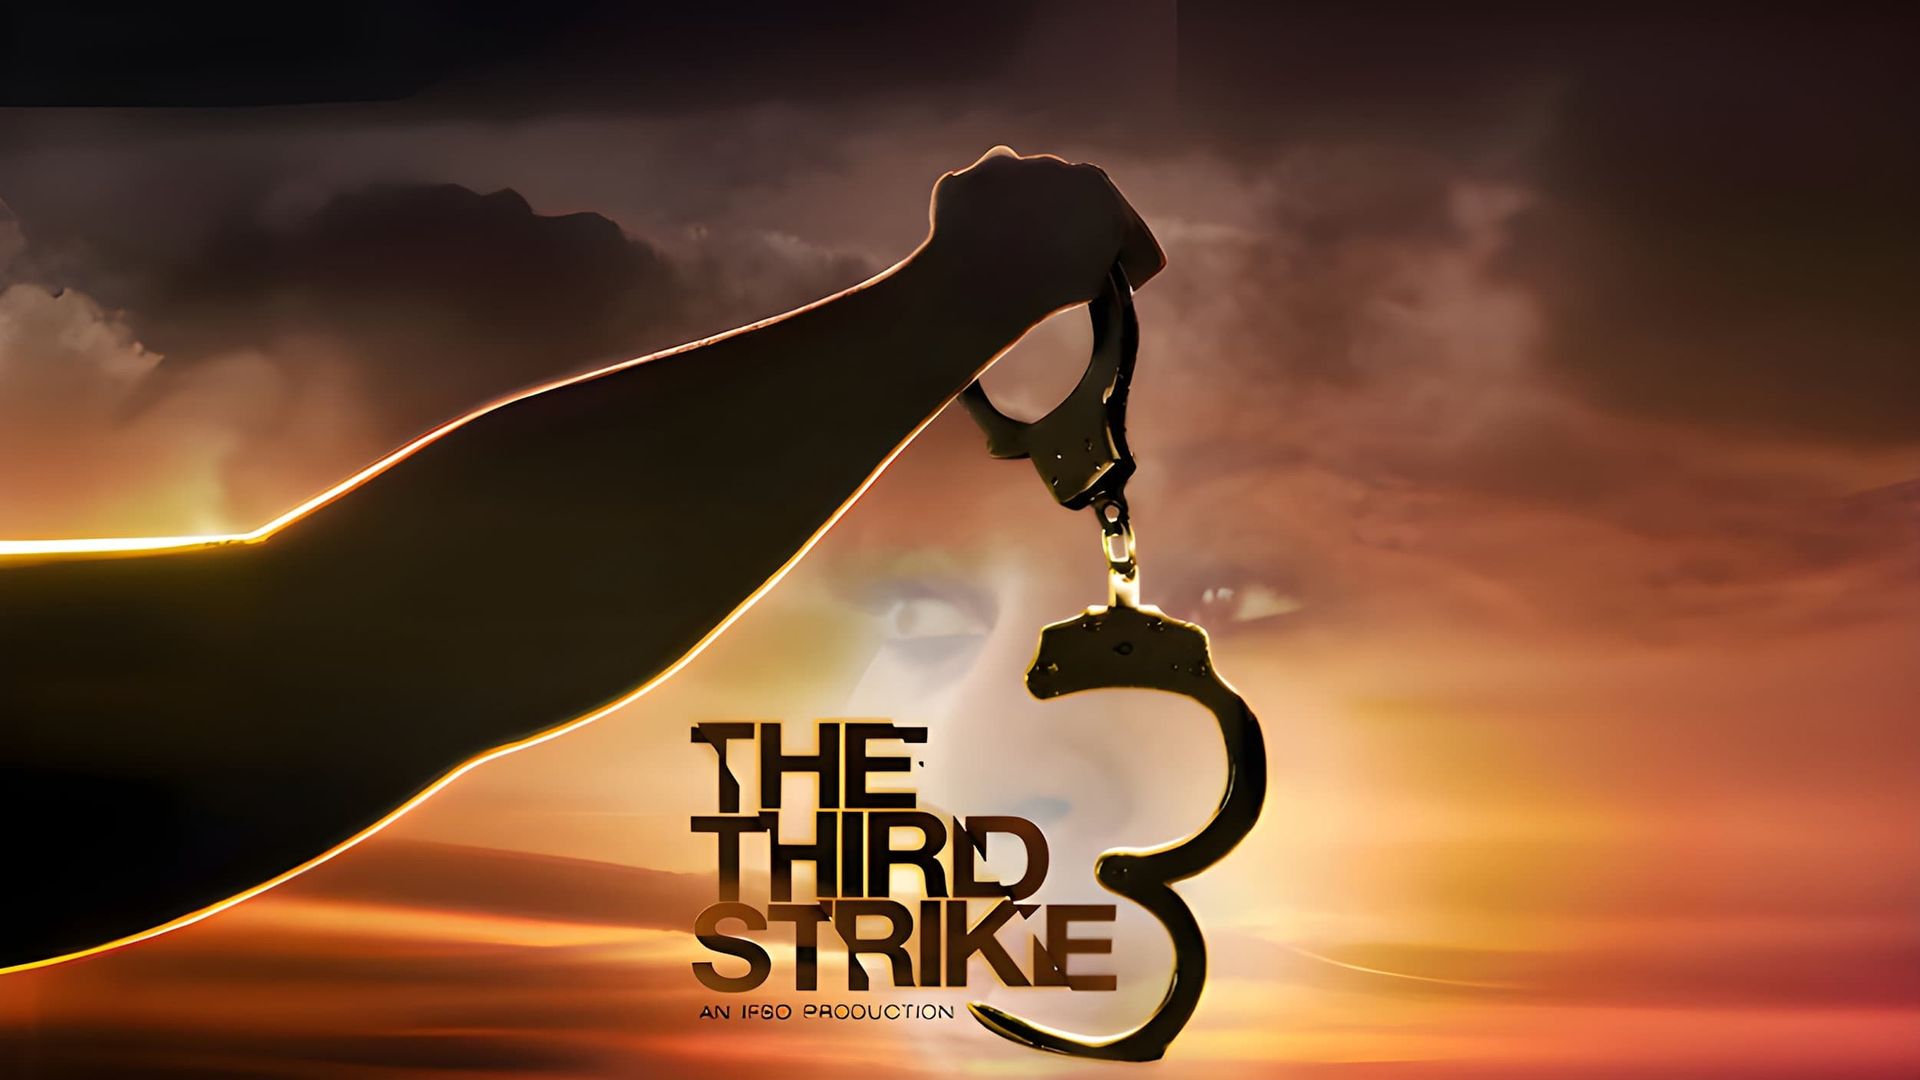 The Third Strike background